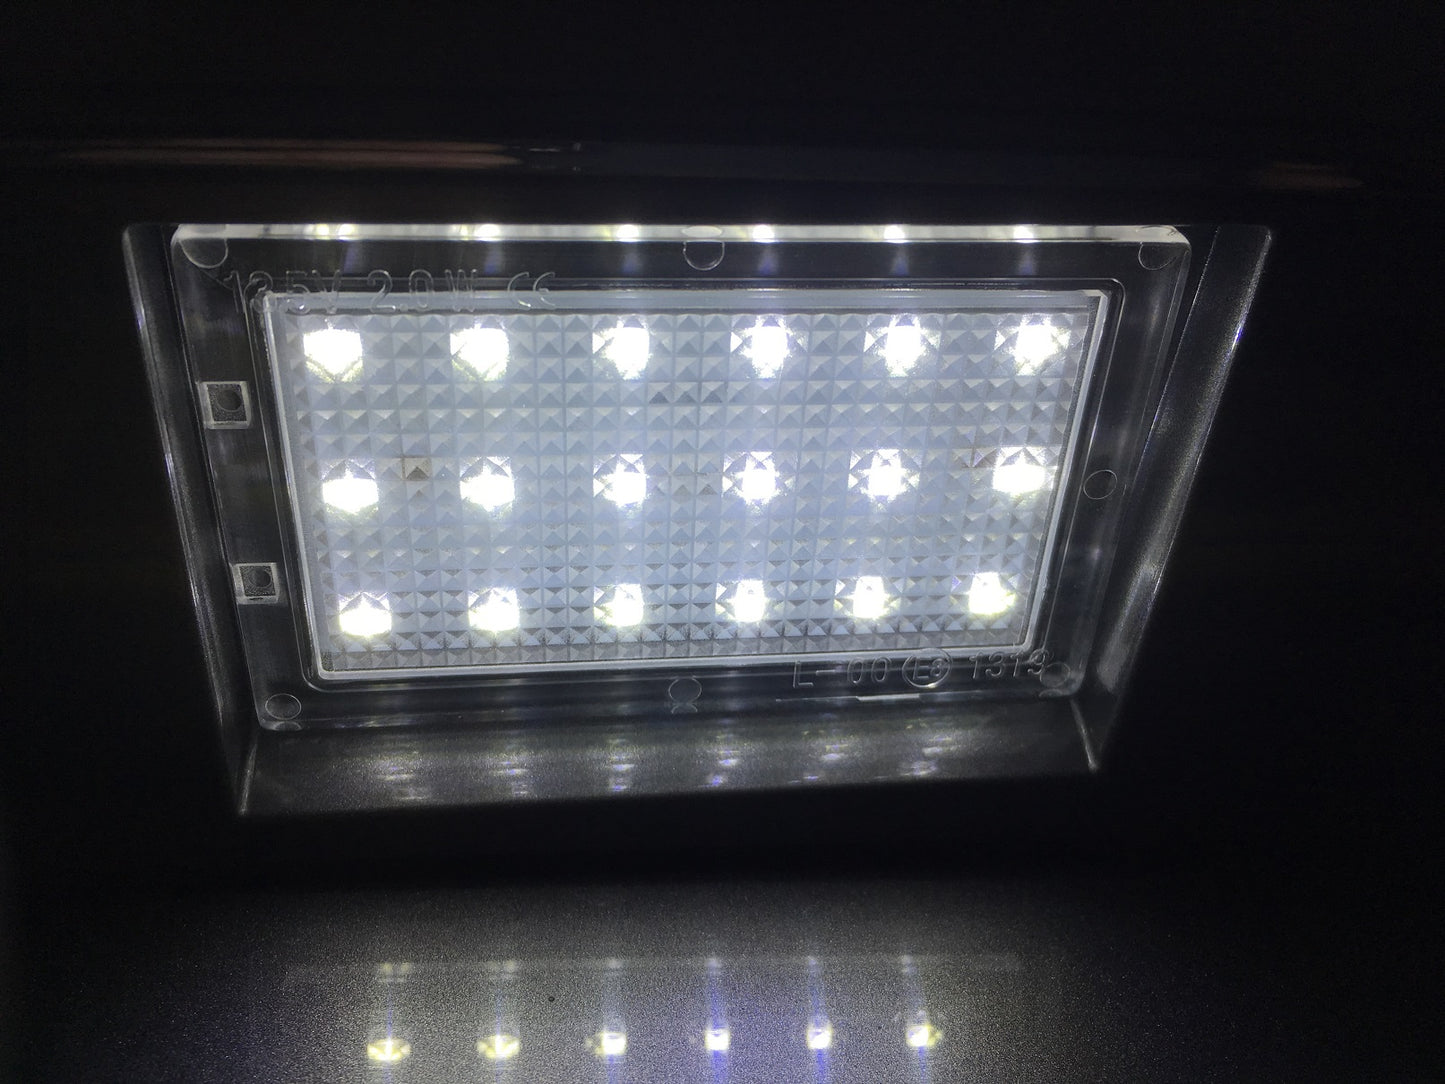 LED Rear Number plate light kit lamp for Land Rover Freelander 2 facelift